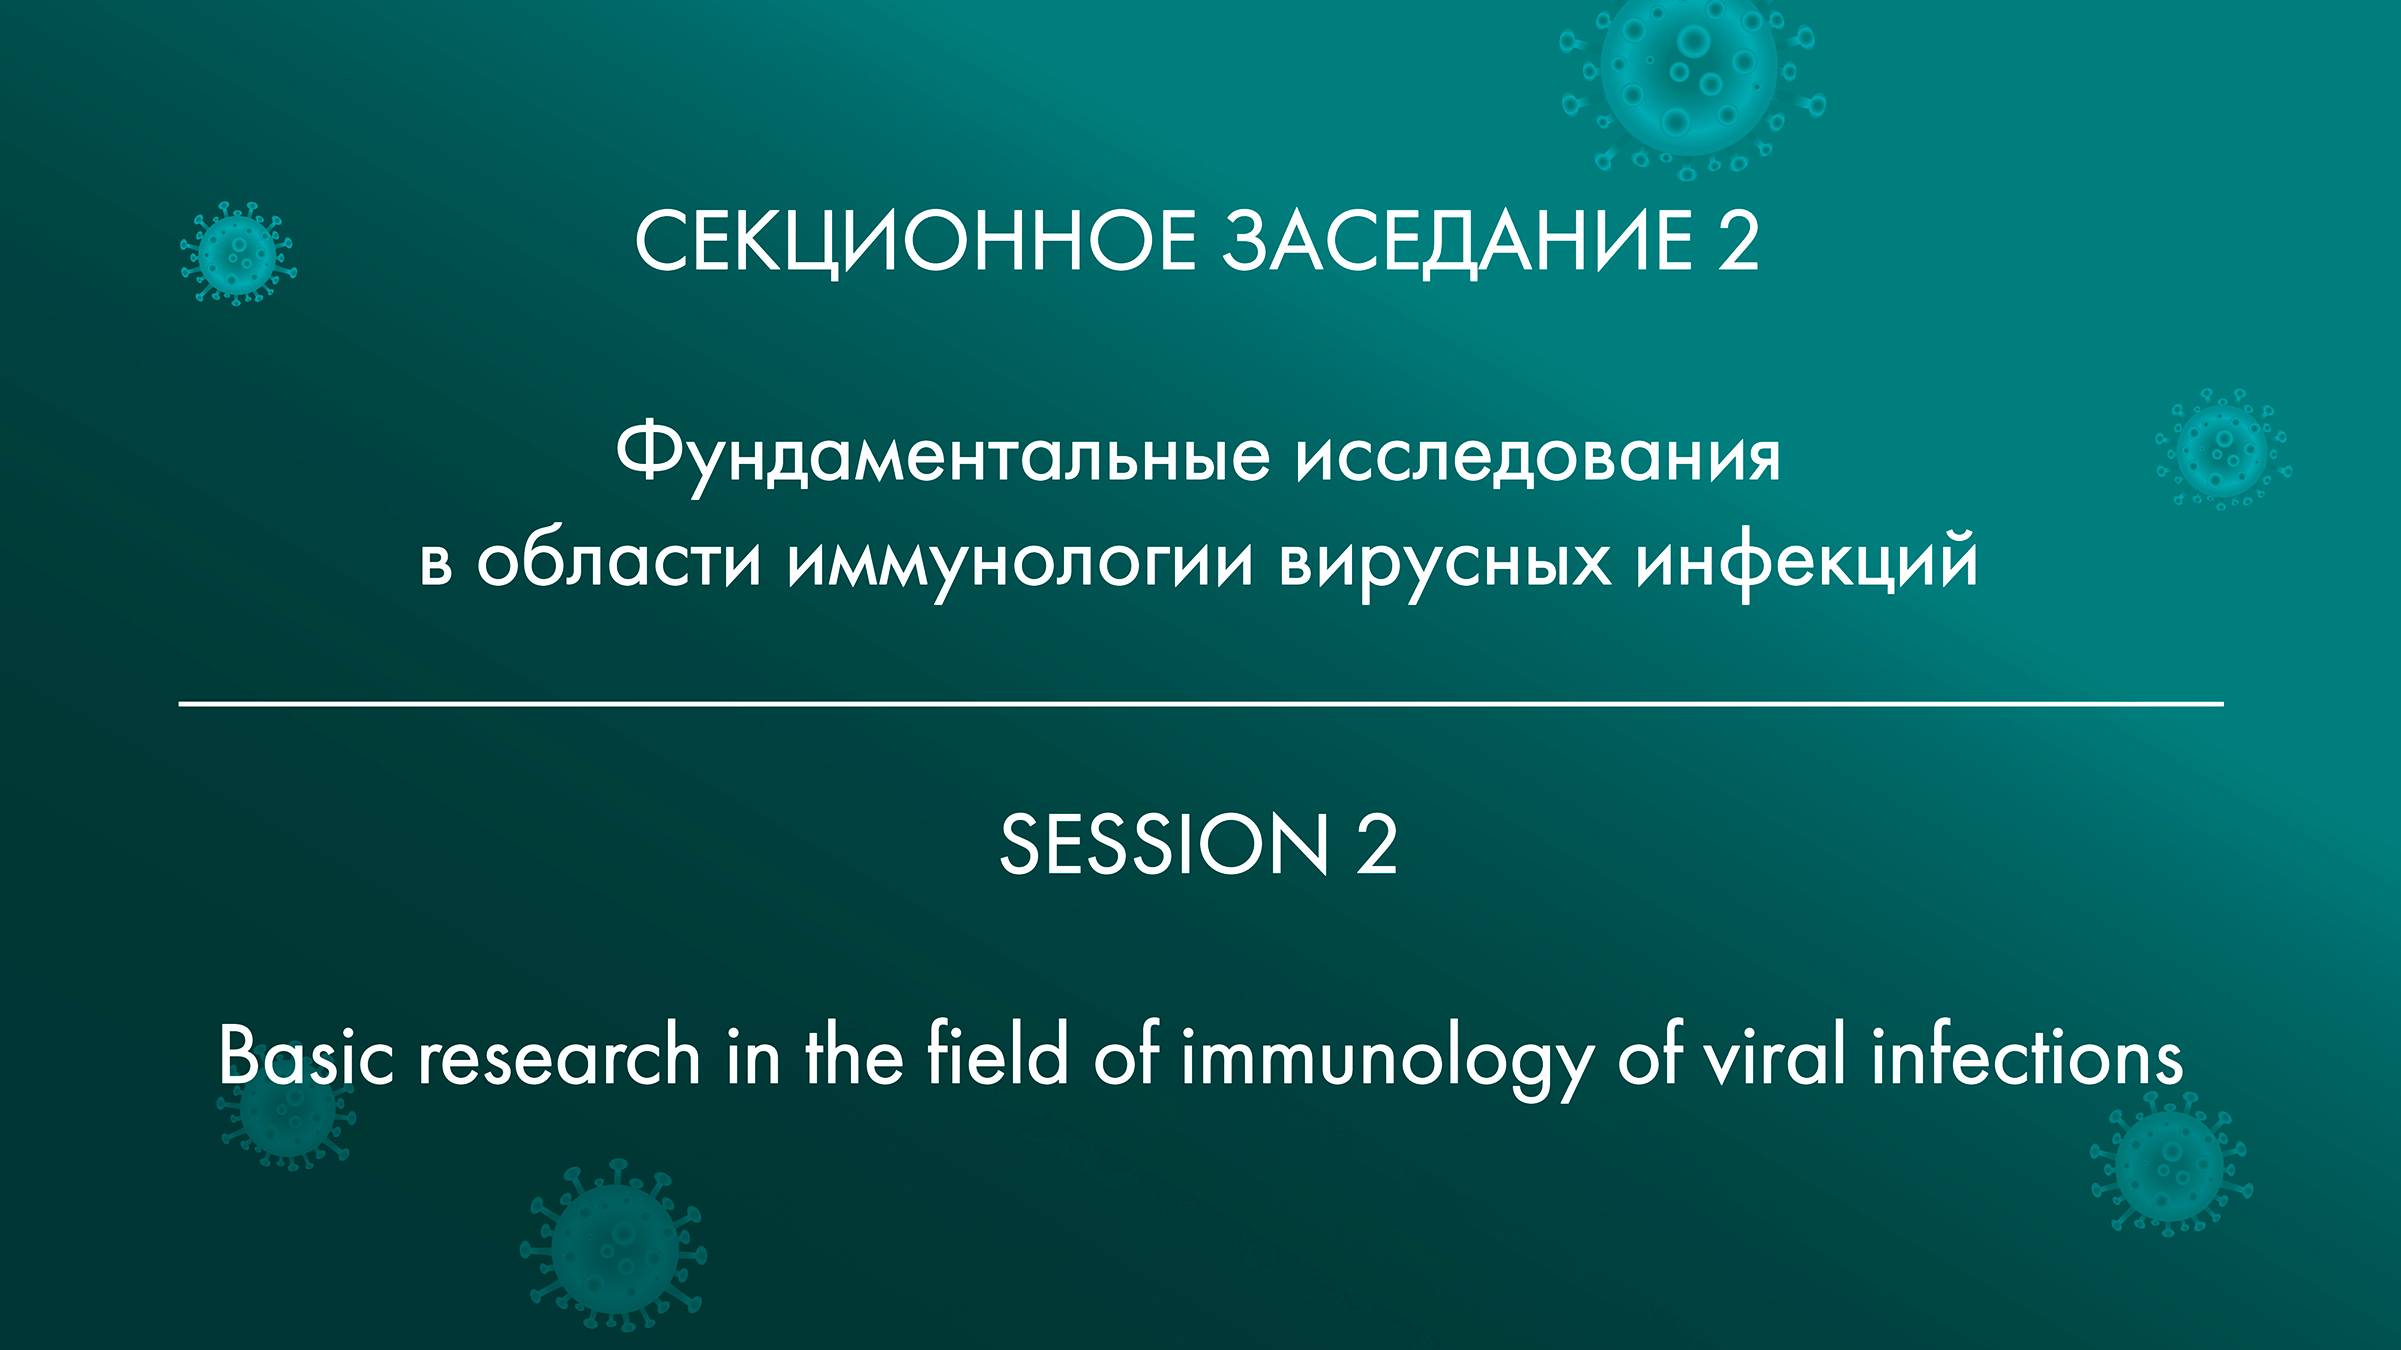 2 СЕКЦИОННОЕ ЗАСЕДАНИЕ Фундаментальные исследования в области иммунологии вирусных инфекций